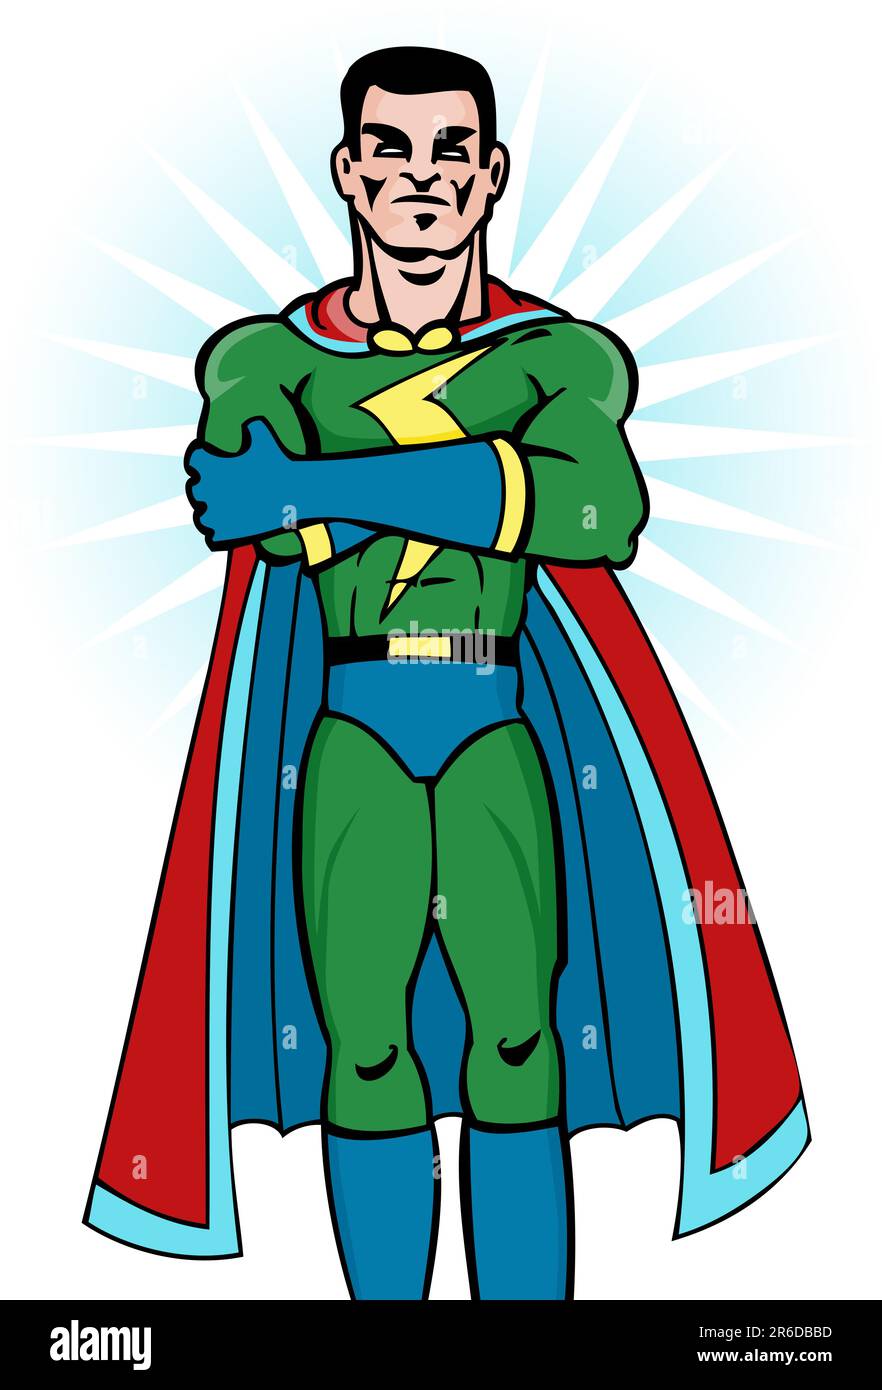 Image de dessin animé du super-héros avec cape. Illustration de Vecteur